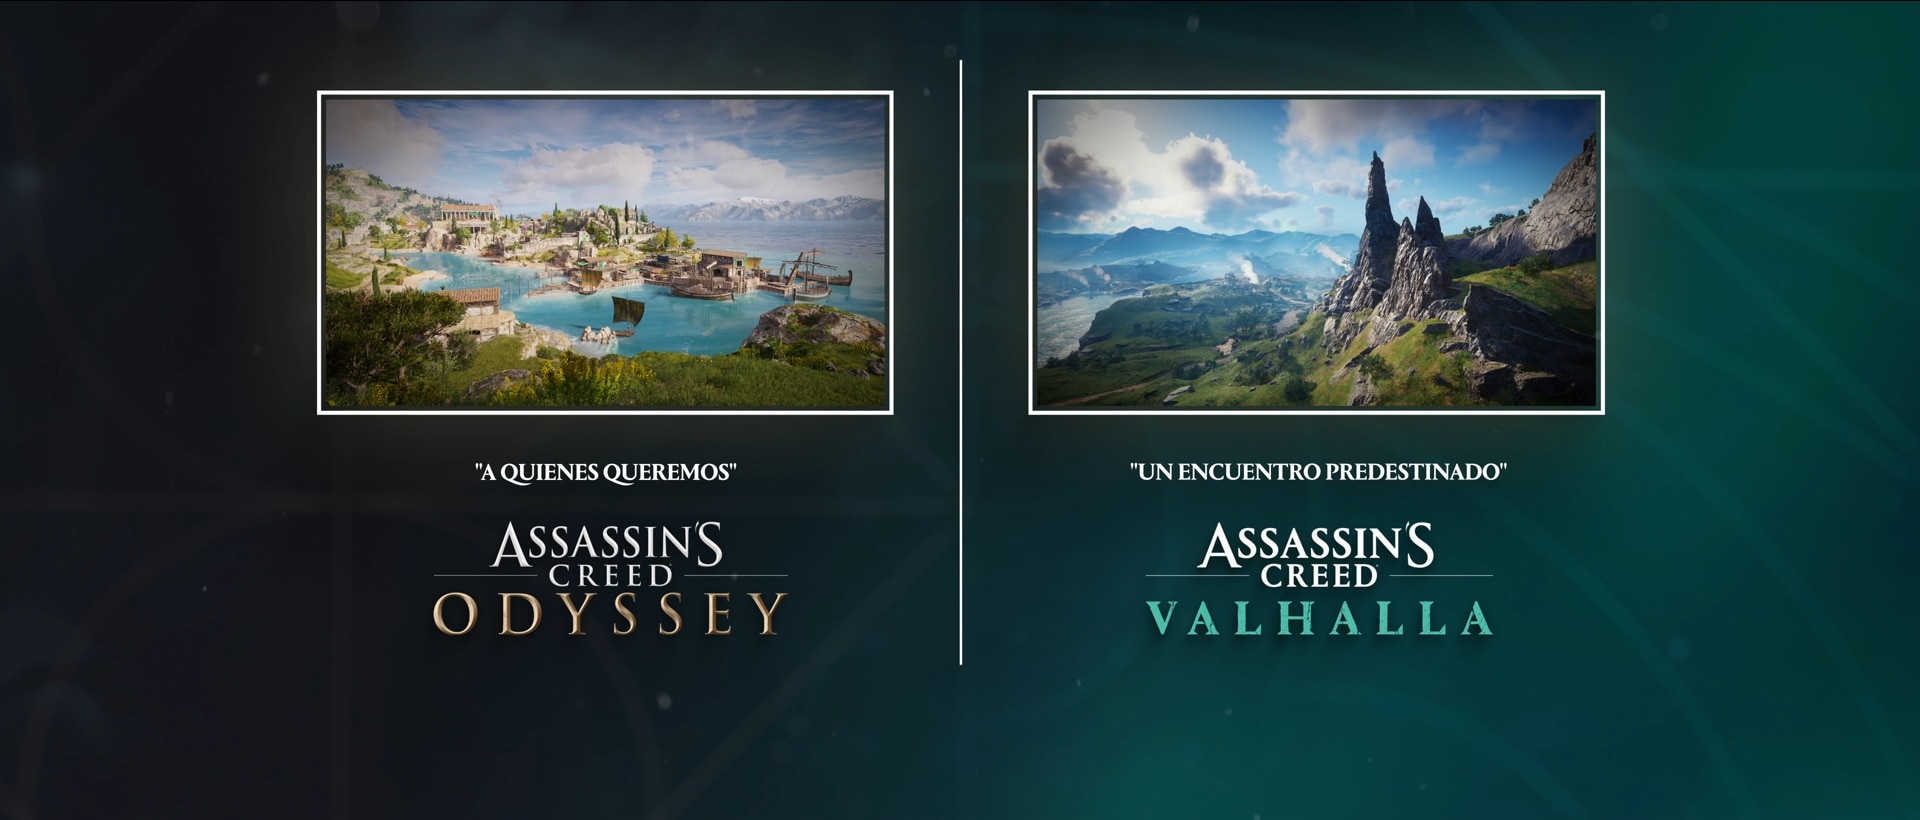 [ACV] [ACOD] Historias cruzadas de Assassin's Creed - Gráfico de las historias cruzadas - Spanish